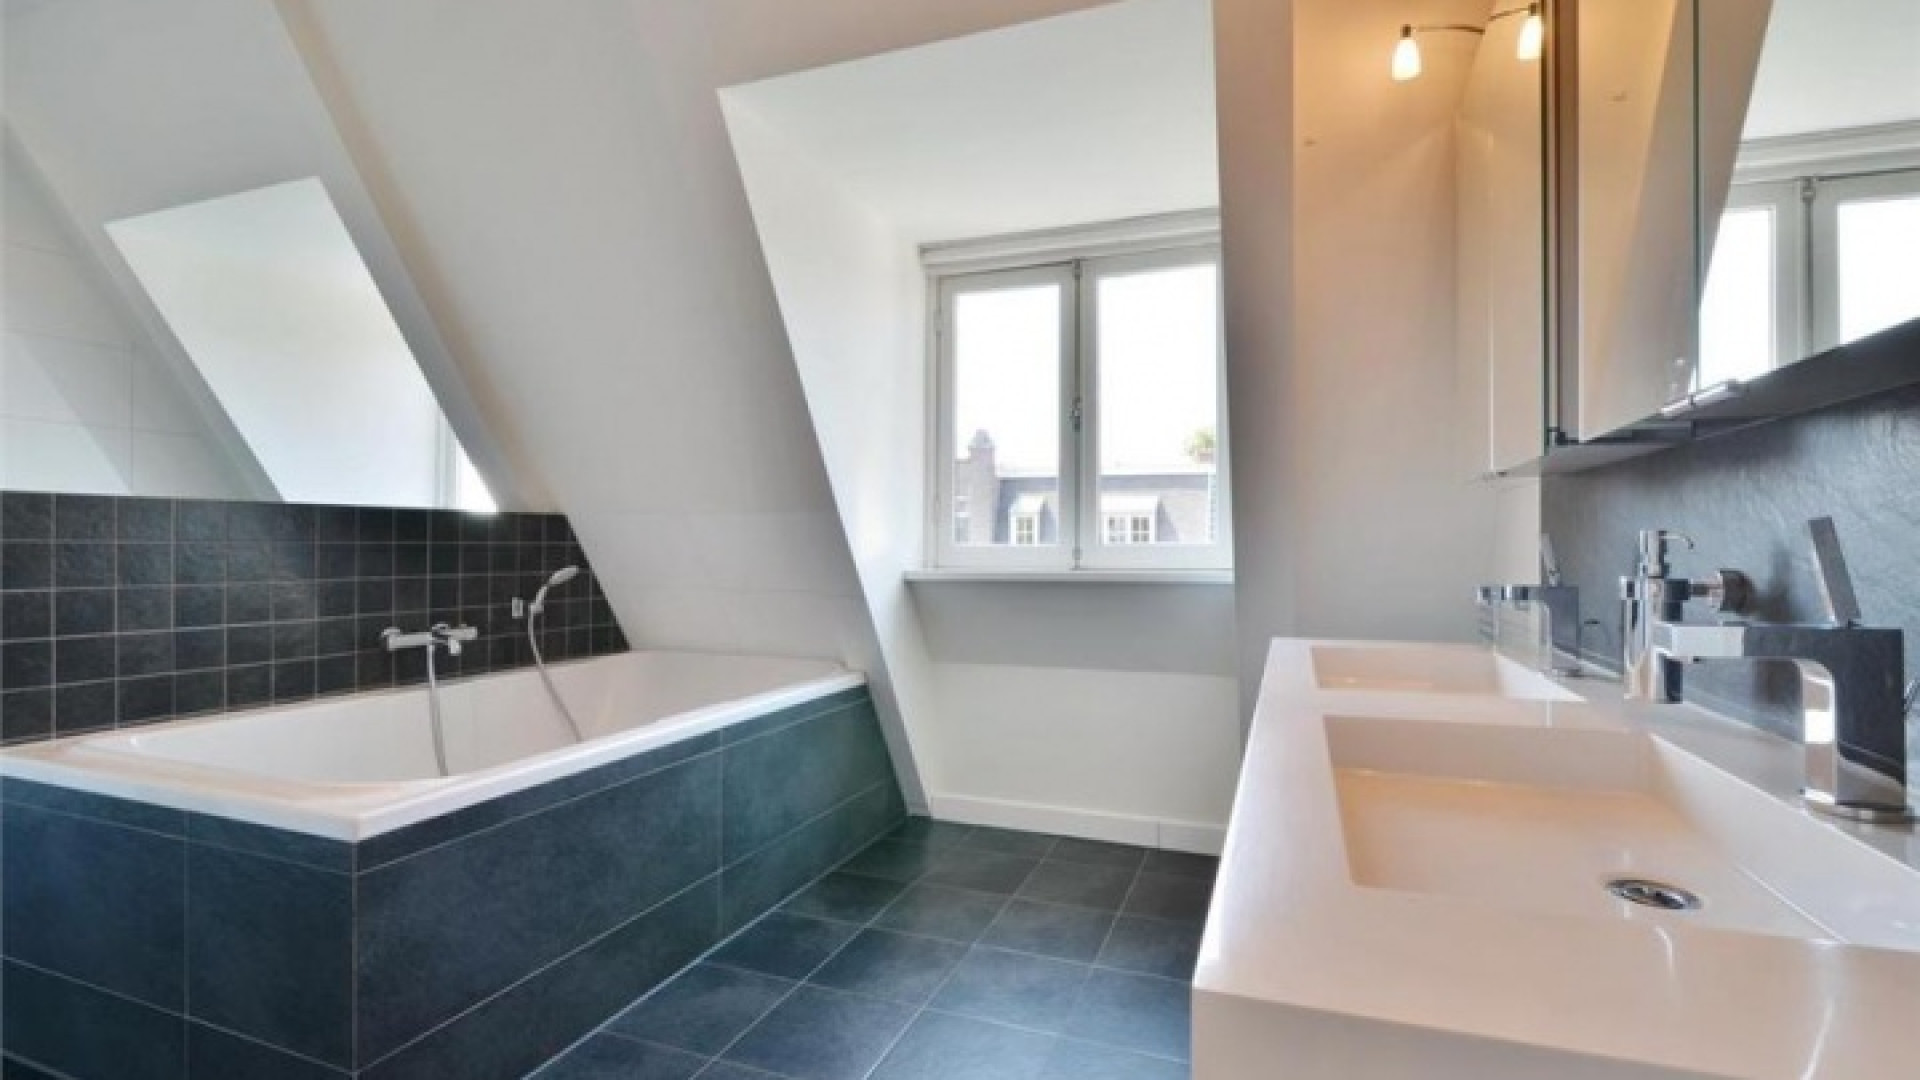 Frank Rijkaard zoekt huurder voor zijn luxe dubbele bovenhuis. Zie foto's 19